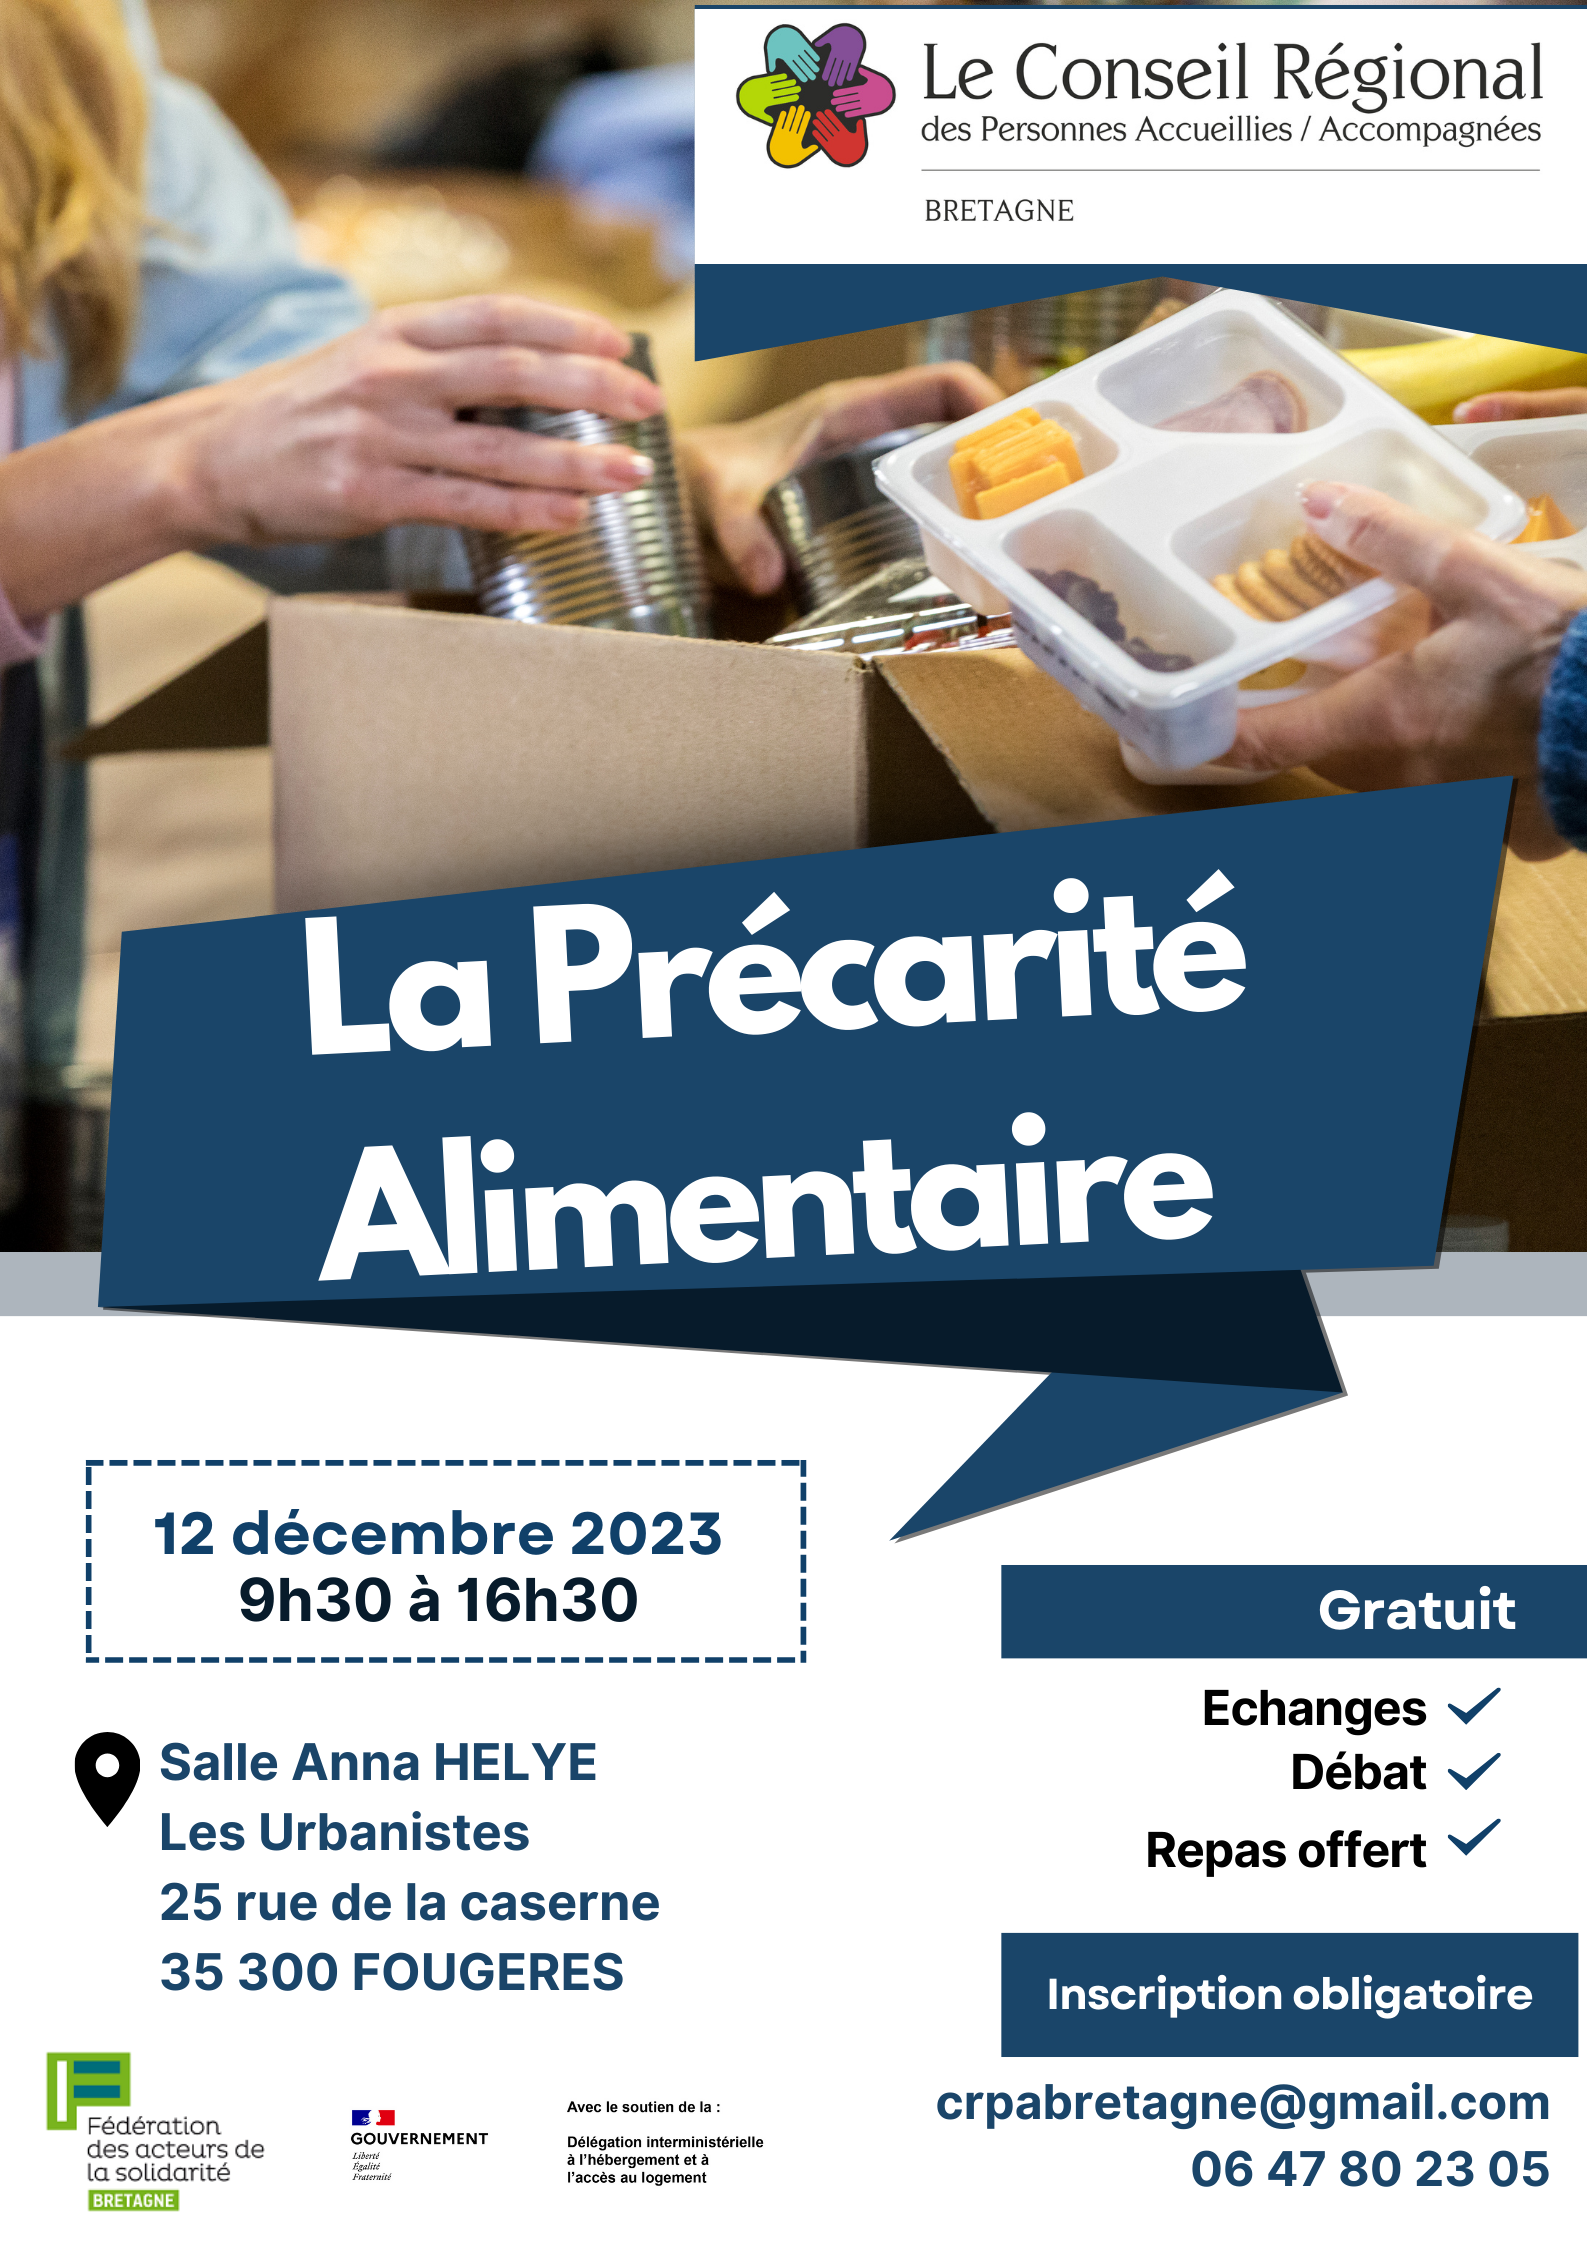 CRPA Bretagne - CR plénière du 12 décembre 2023